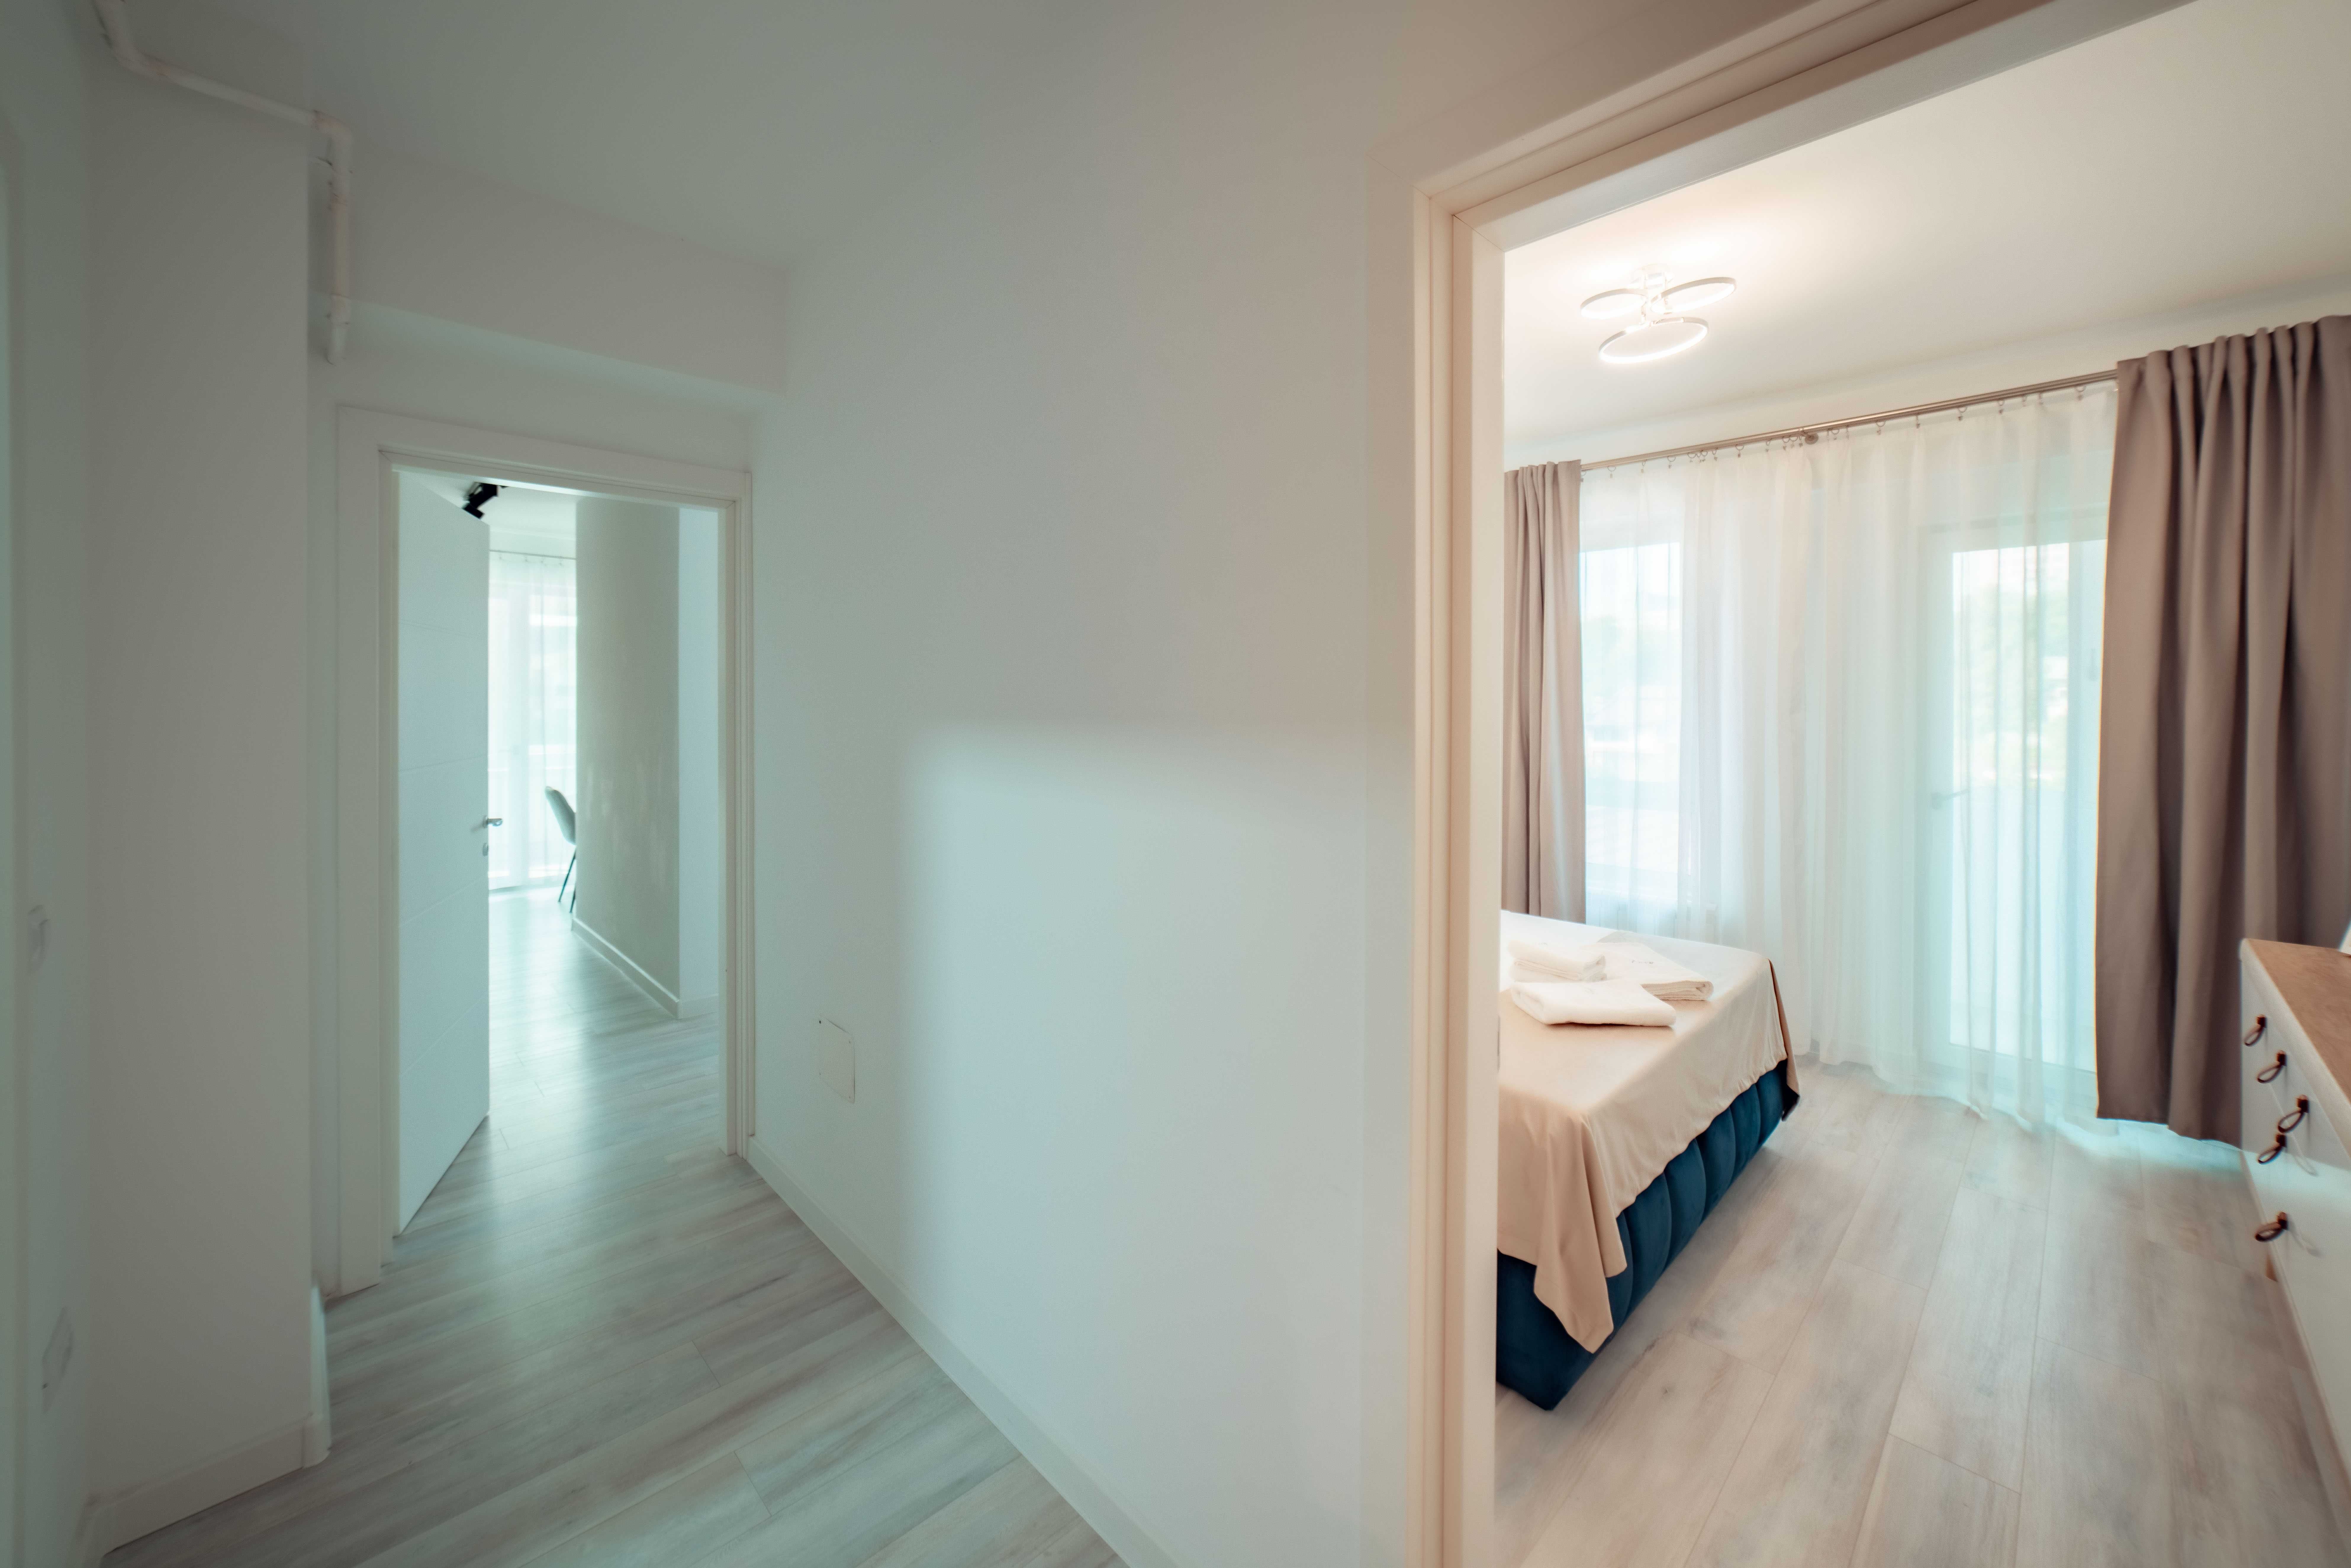 Cazare in Regim Hotelier - Apartamente de Lux Brasov